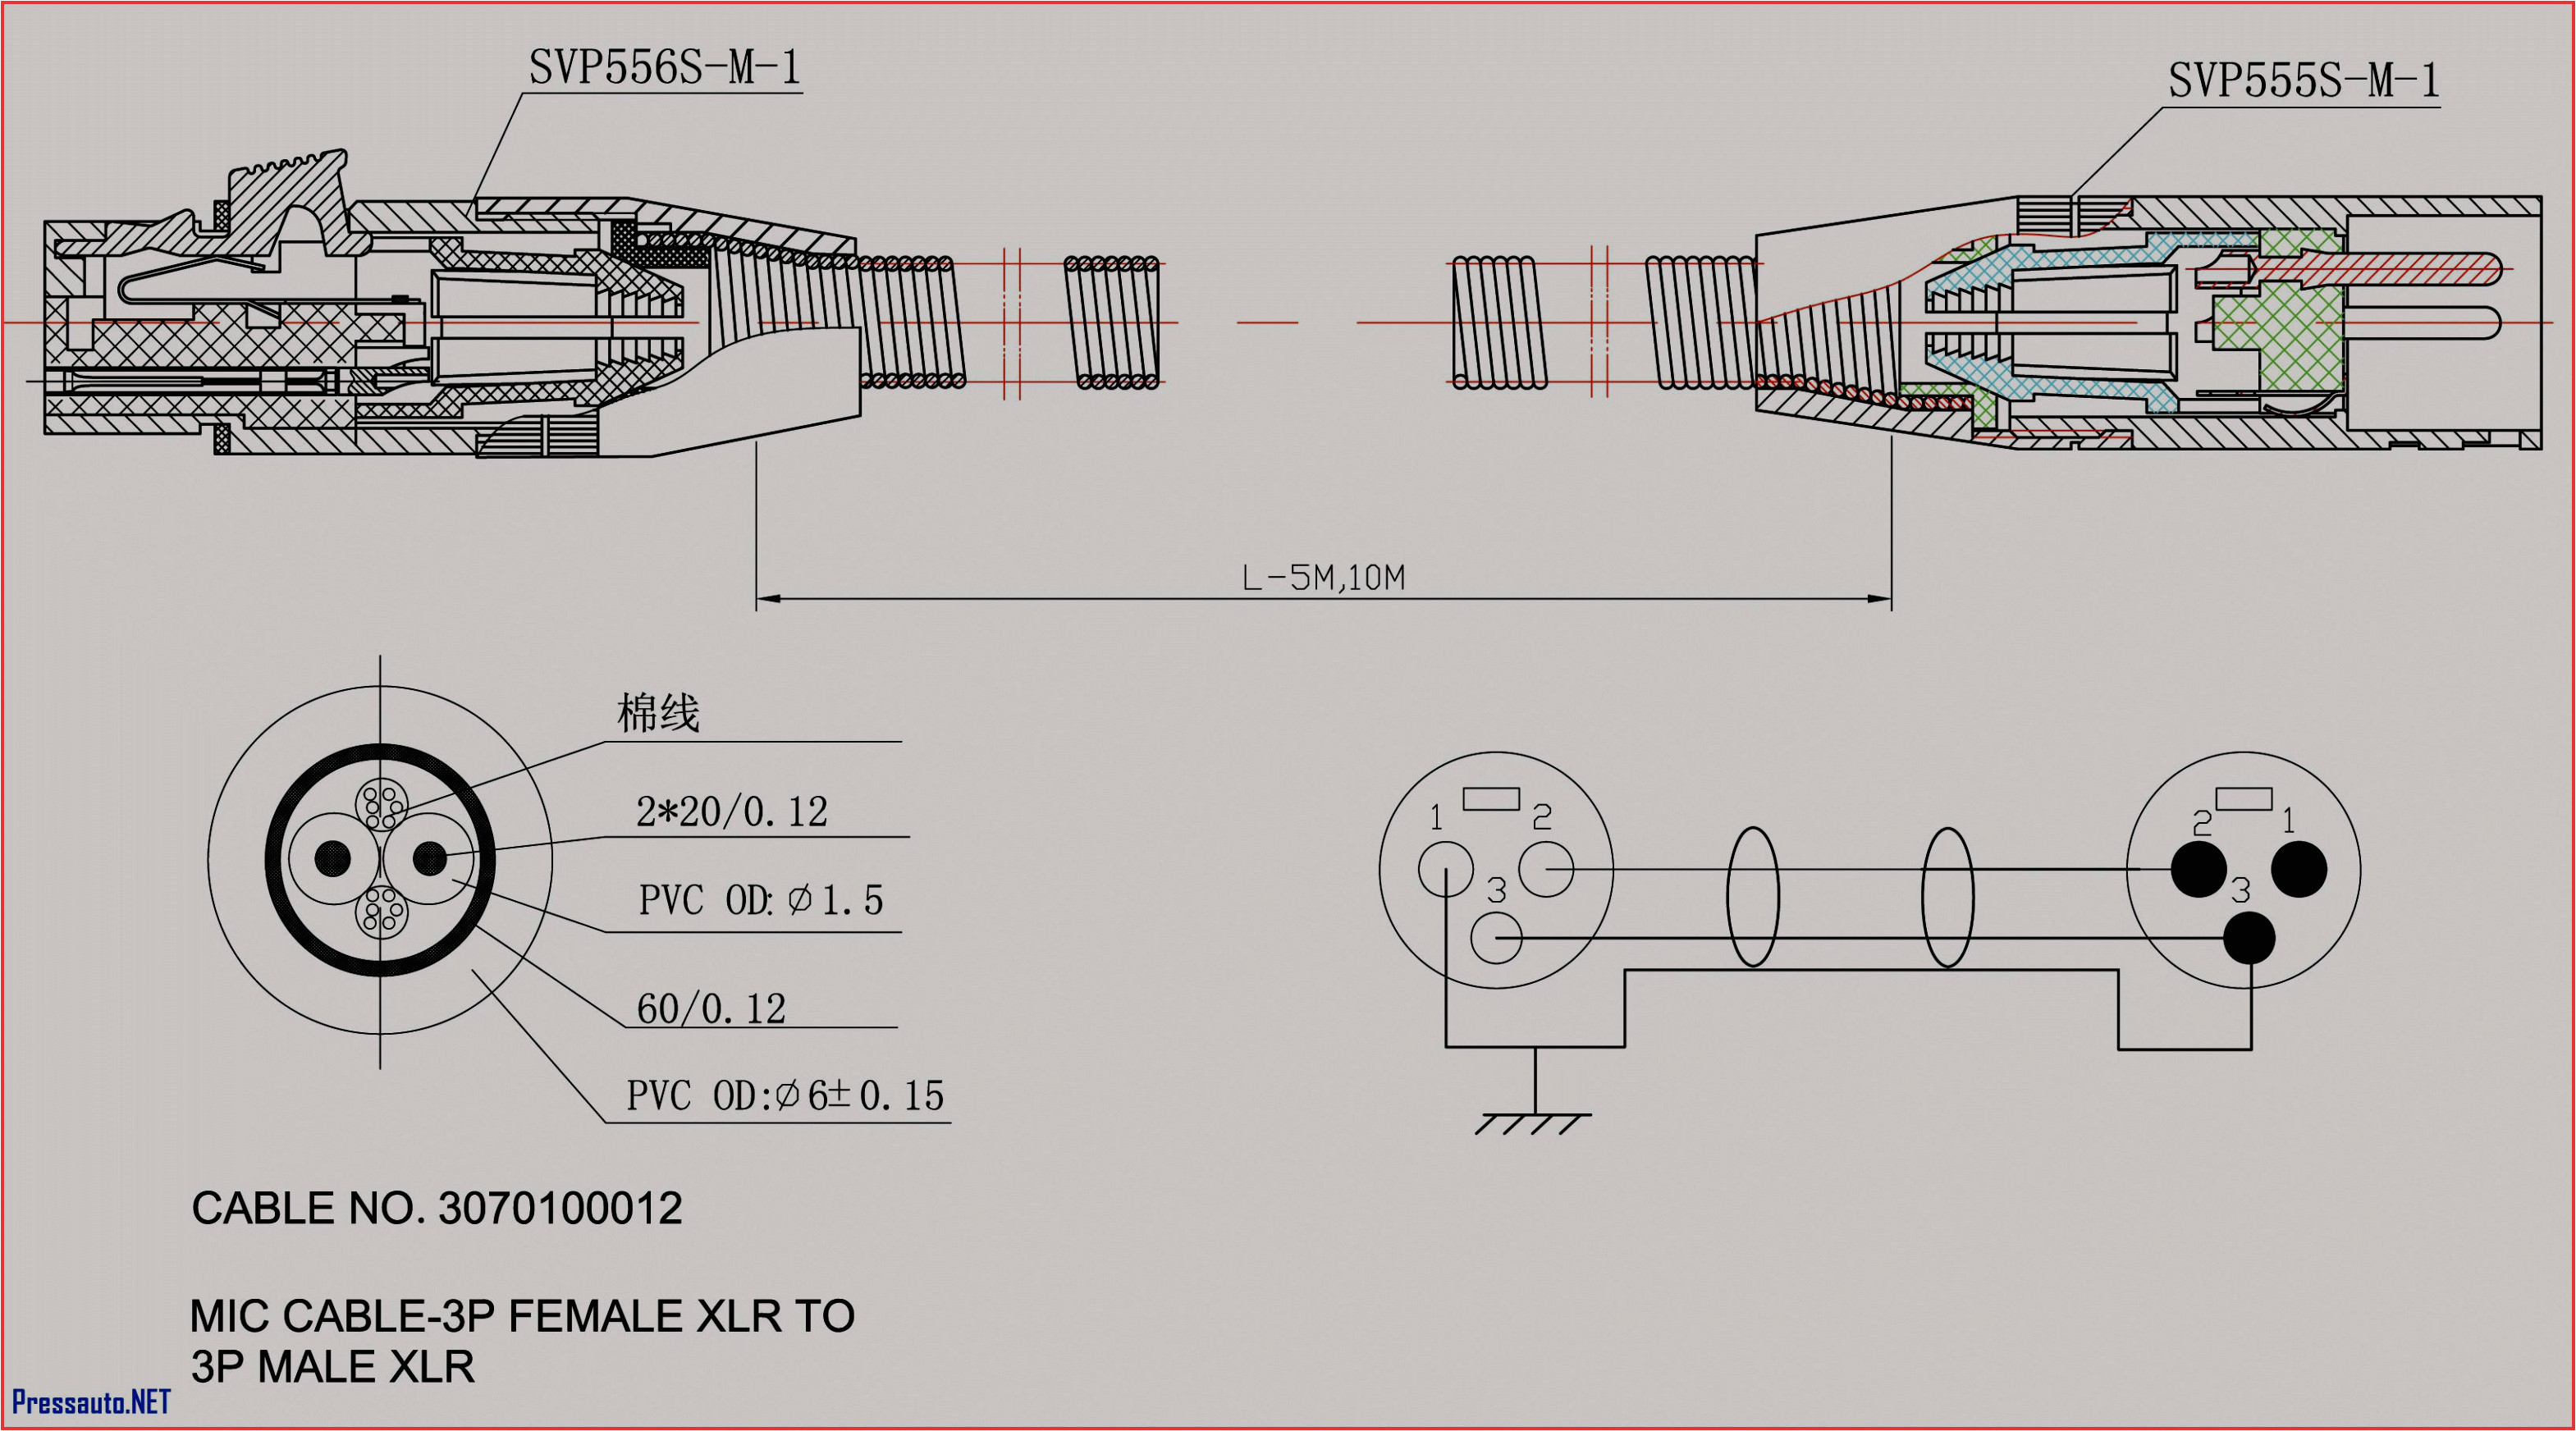 Blower Motor Wiring Diagram Manual Arco Wiring Diagrams Wiring Diagram Datasource